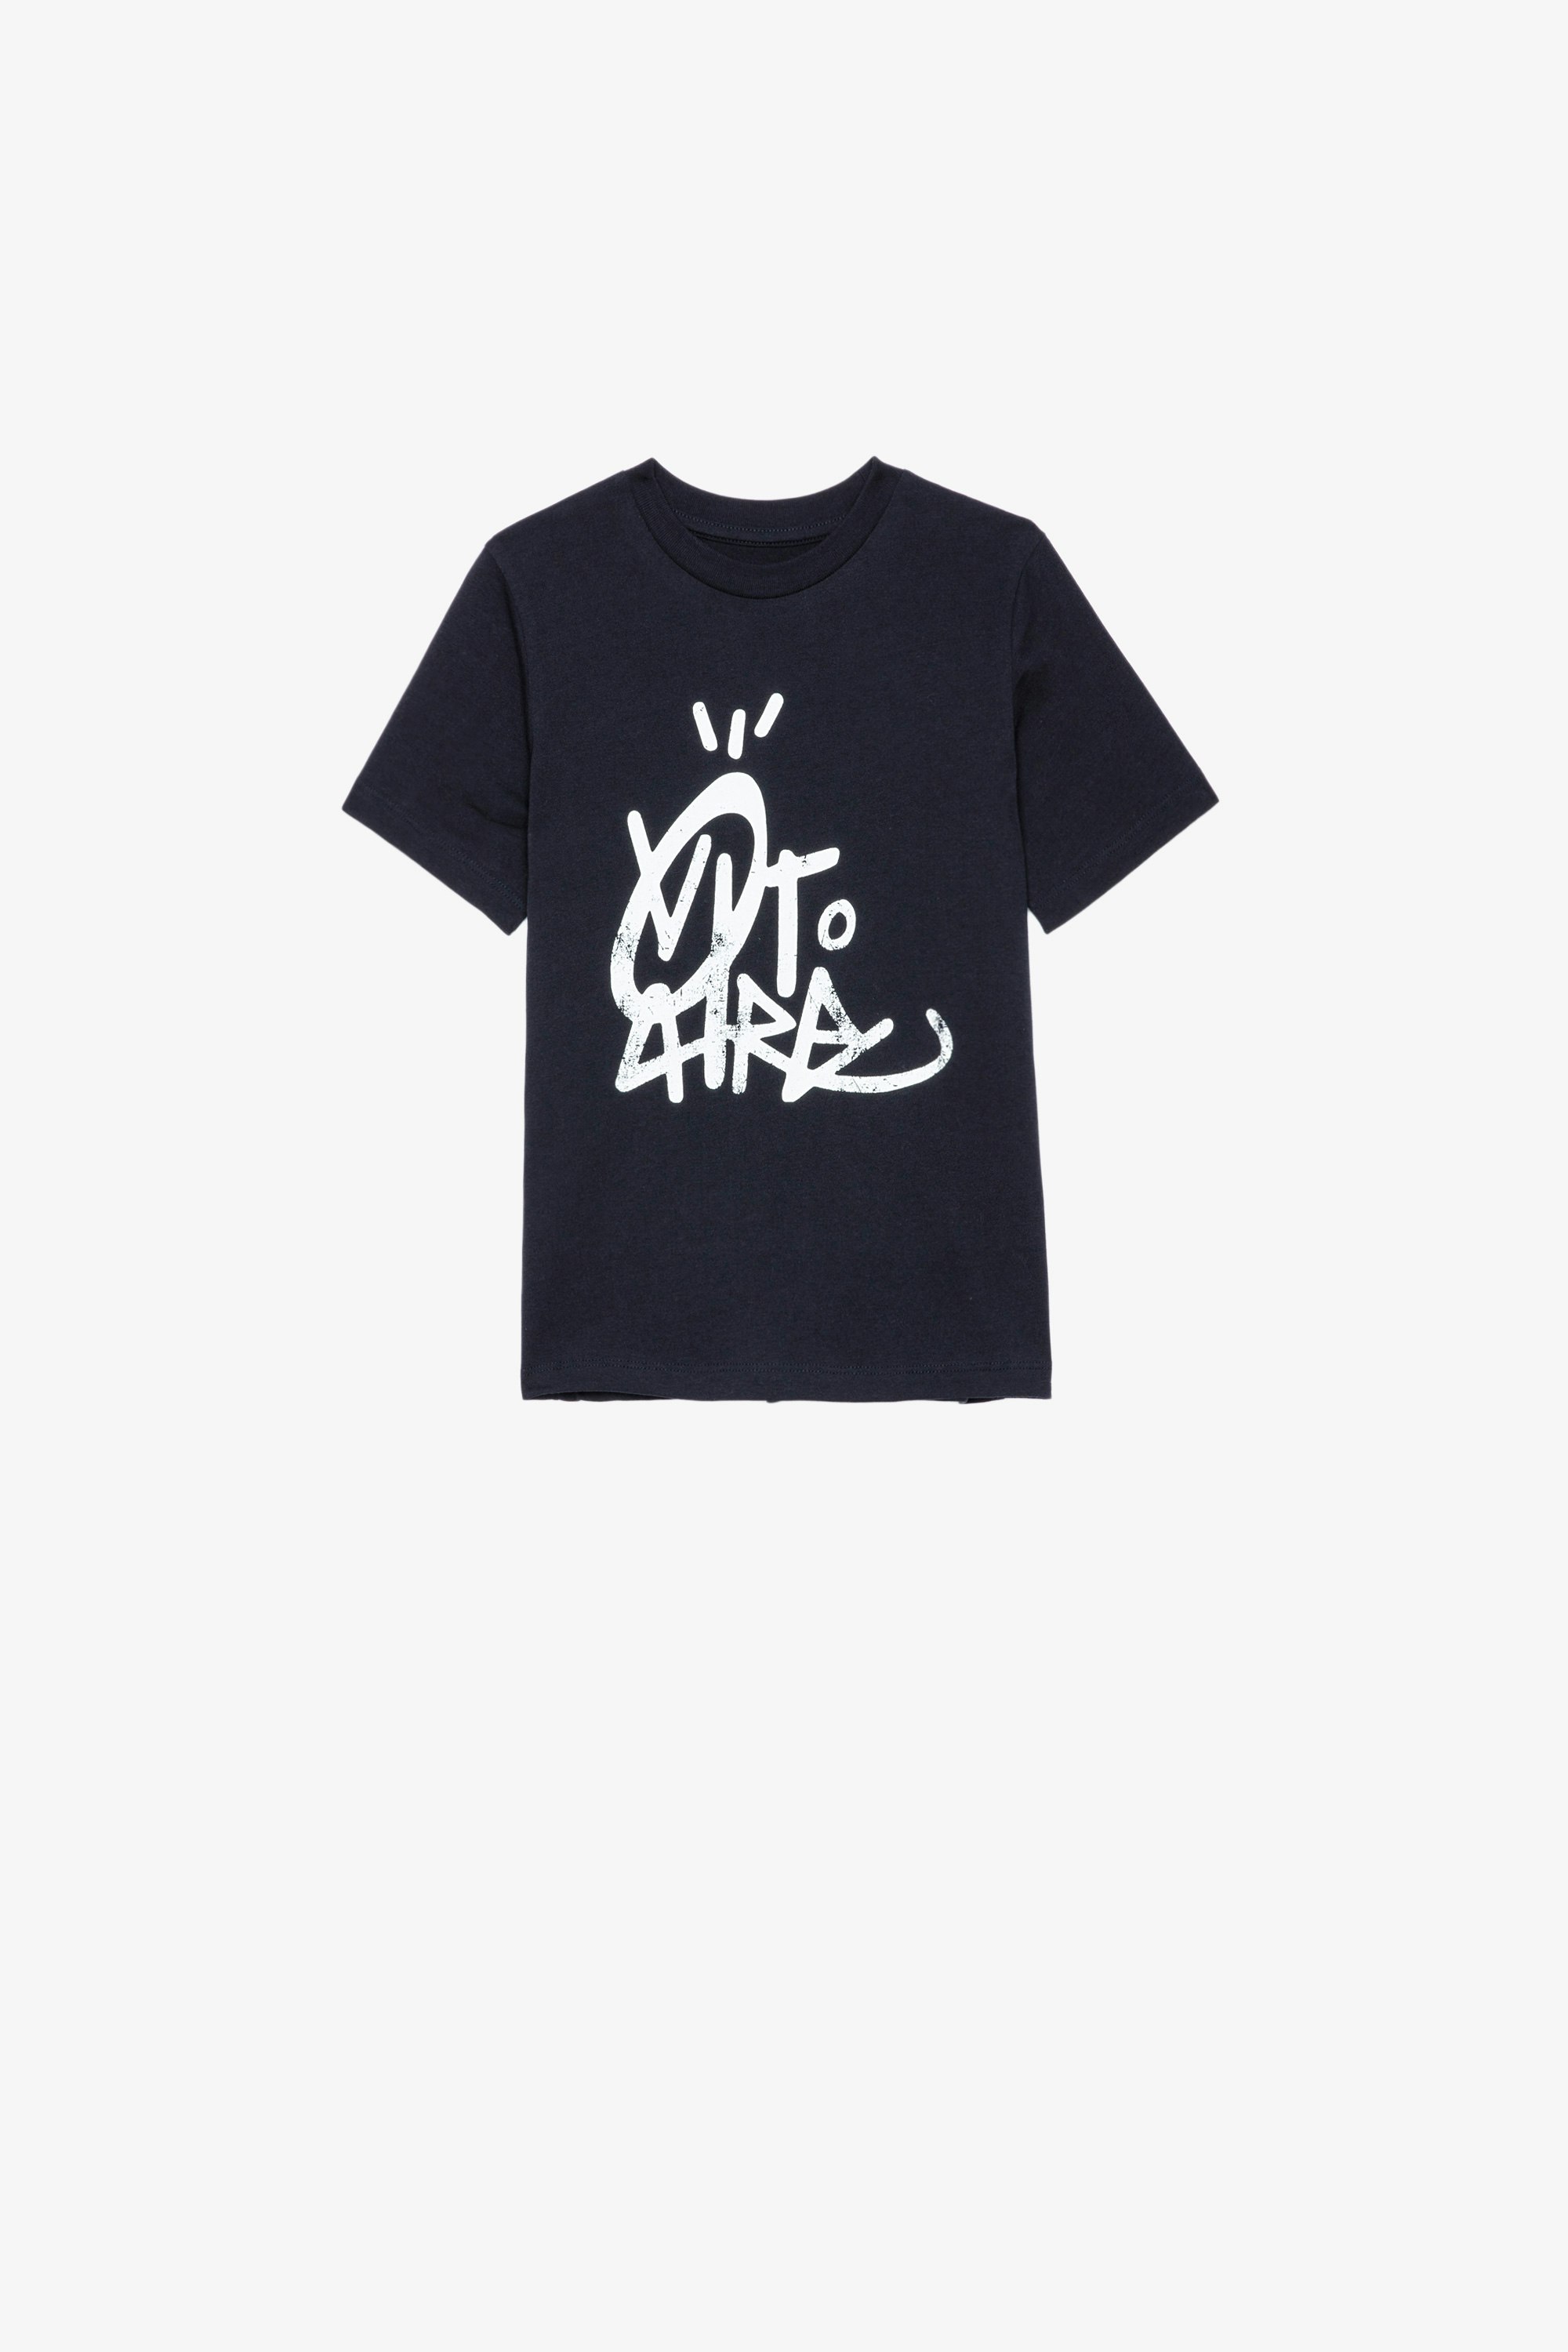 Kita アンファン Ｔシャツ マリンブルー コットンジャージー半袖Tシャツ フロントにJormiのデザイン キッズ